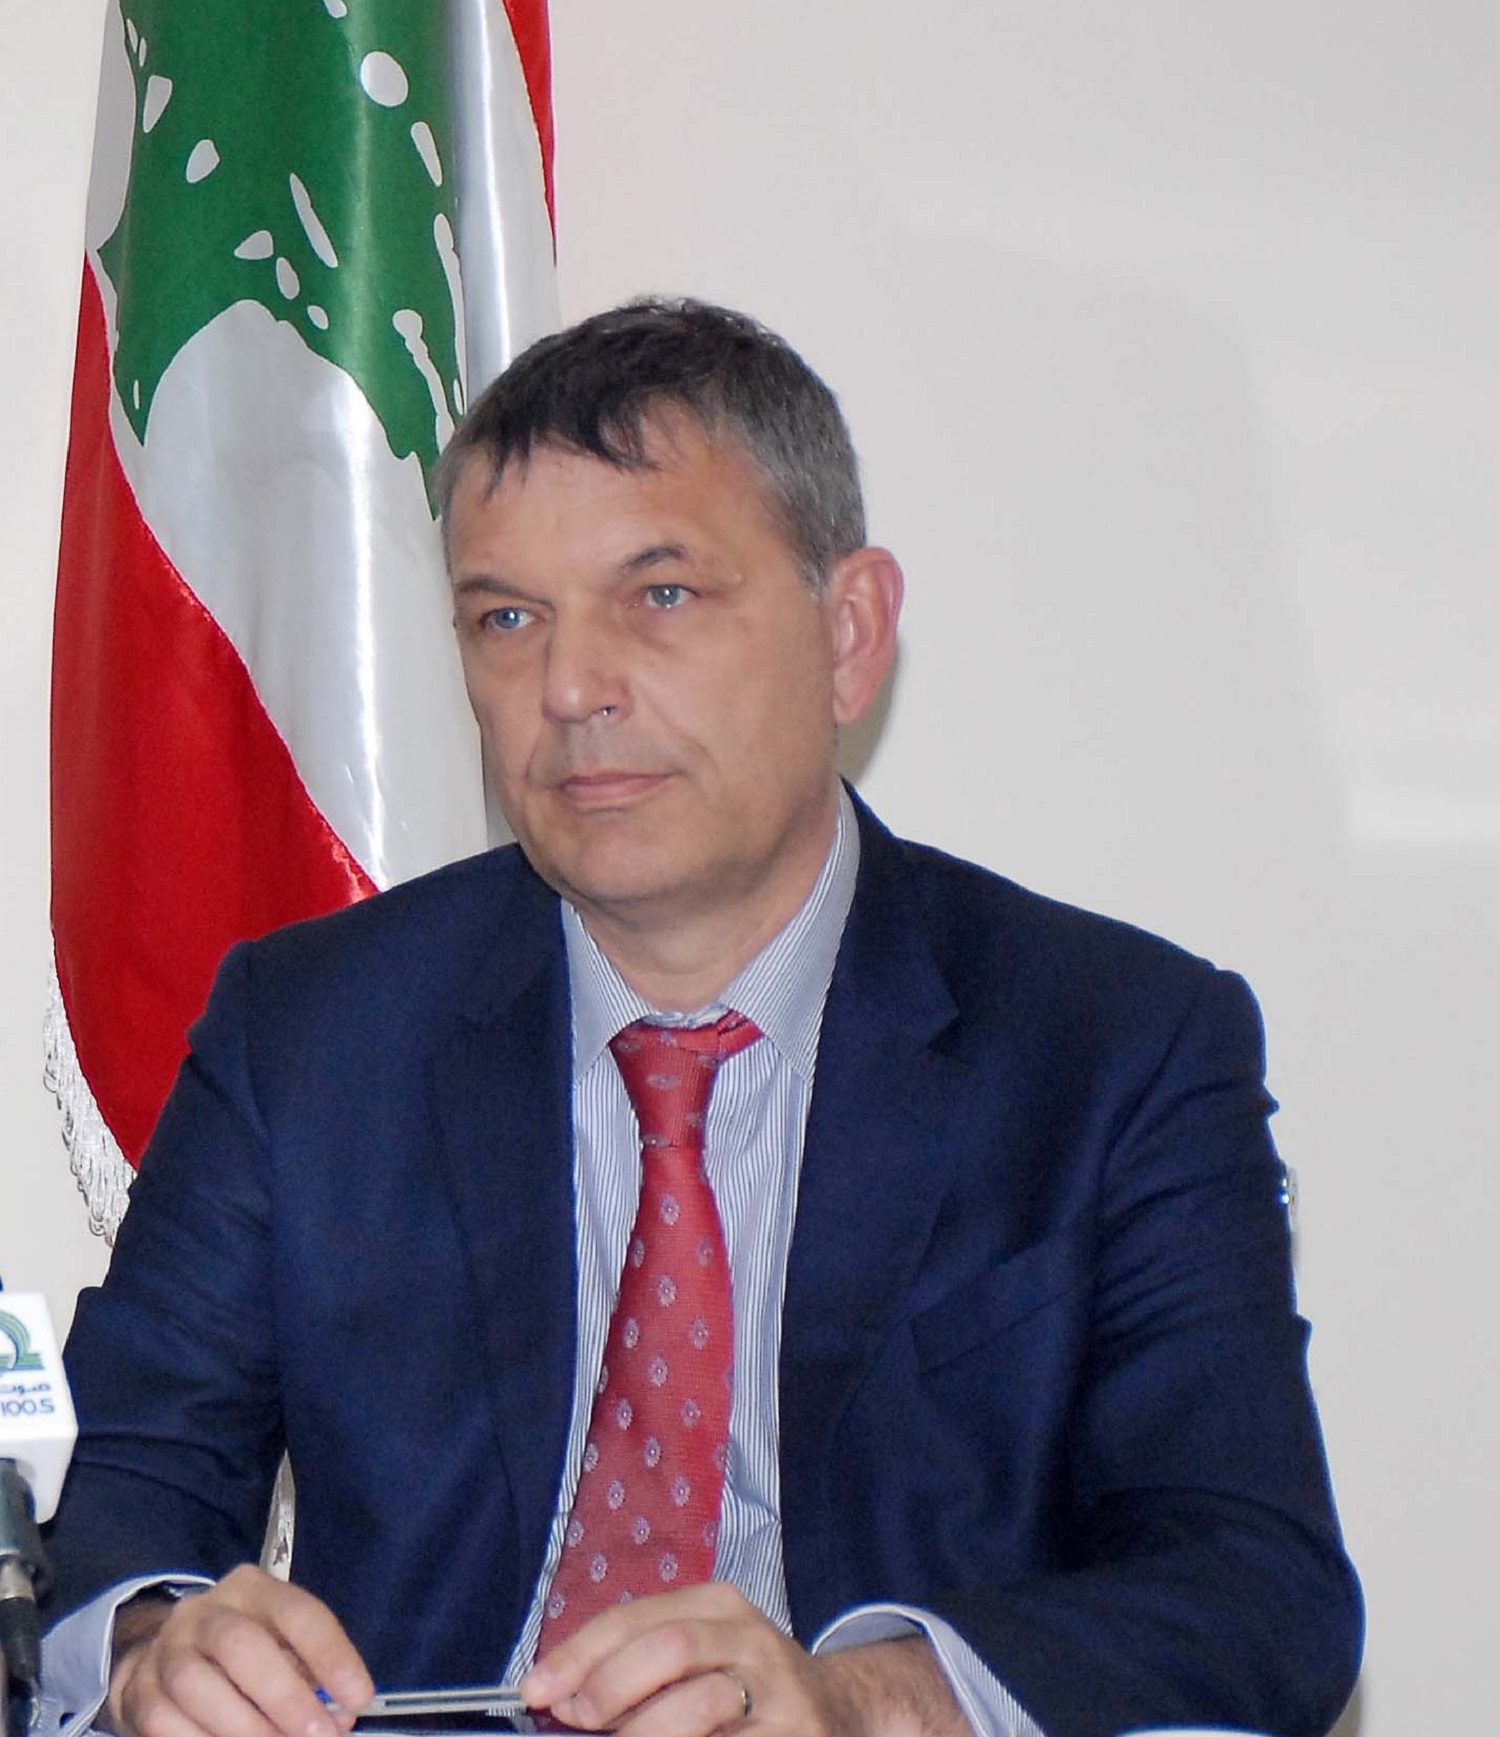 UNDP Resident Representative in Lebanon Philippe Lazzarini